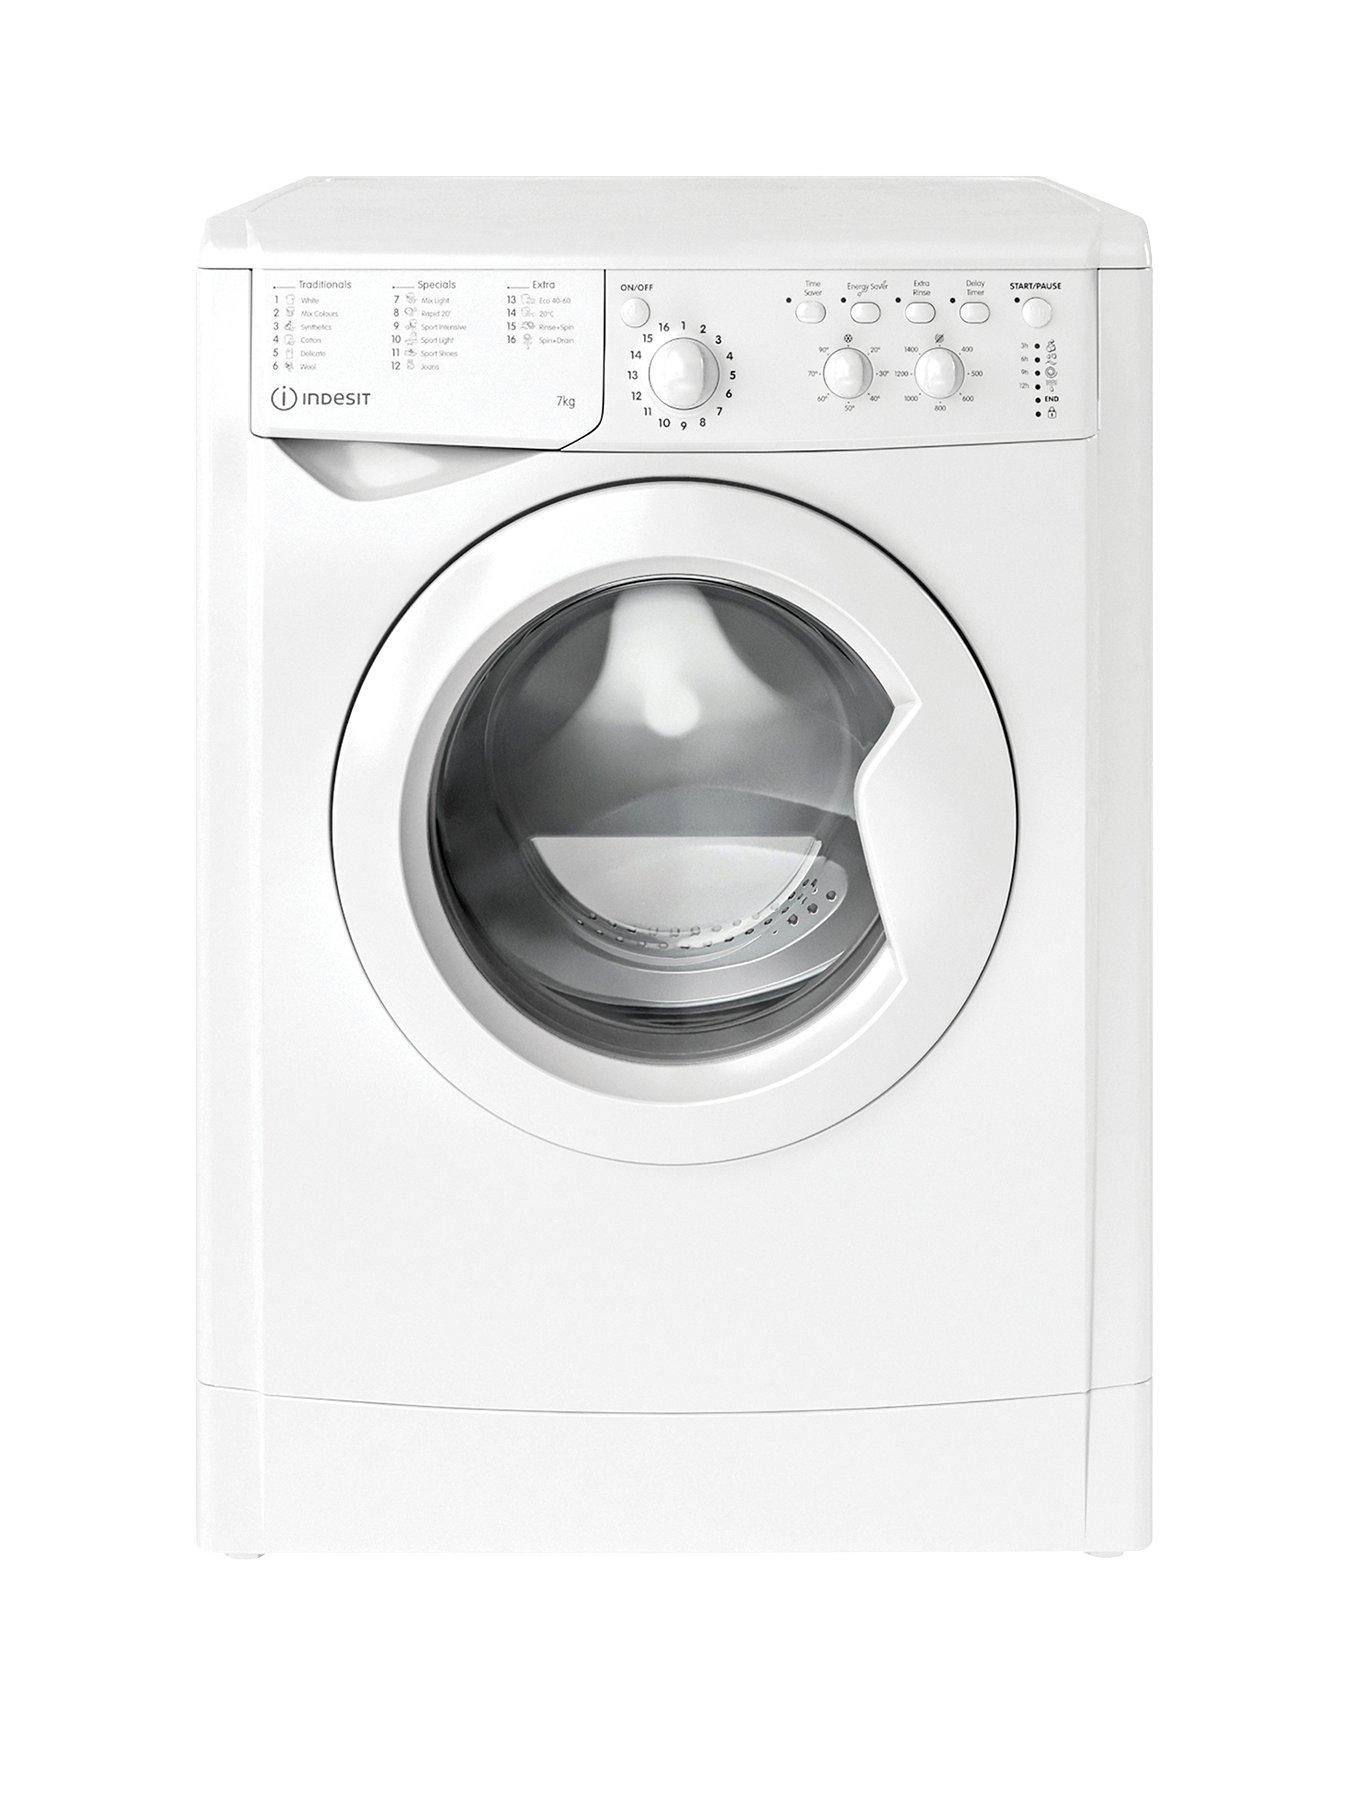 Indesit Iwc81283Wukn 8Kg Load 1200 Spin Washing Machine - White